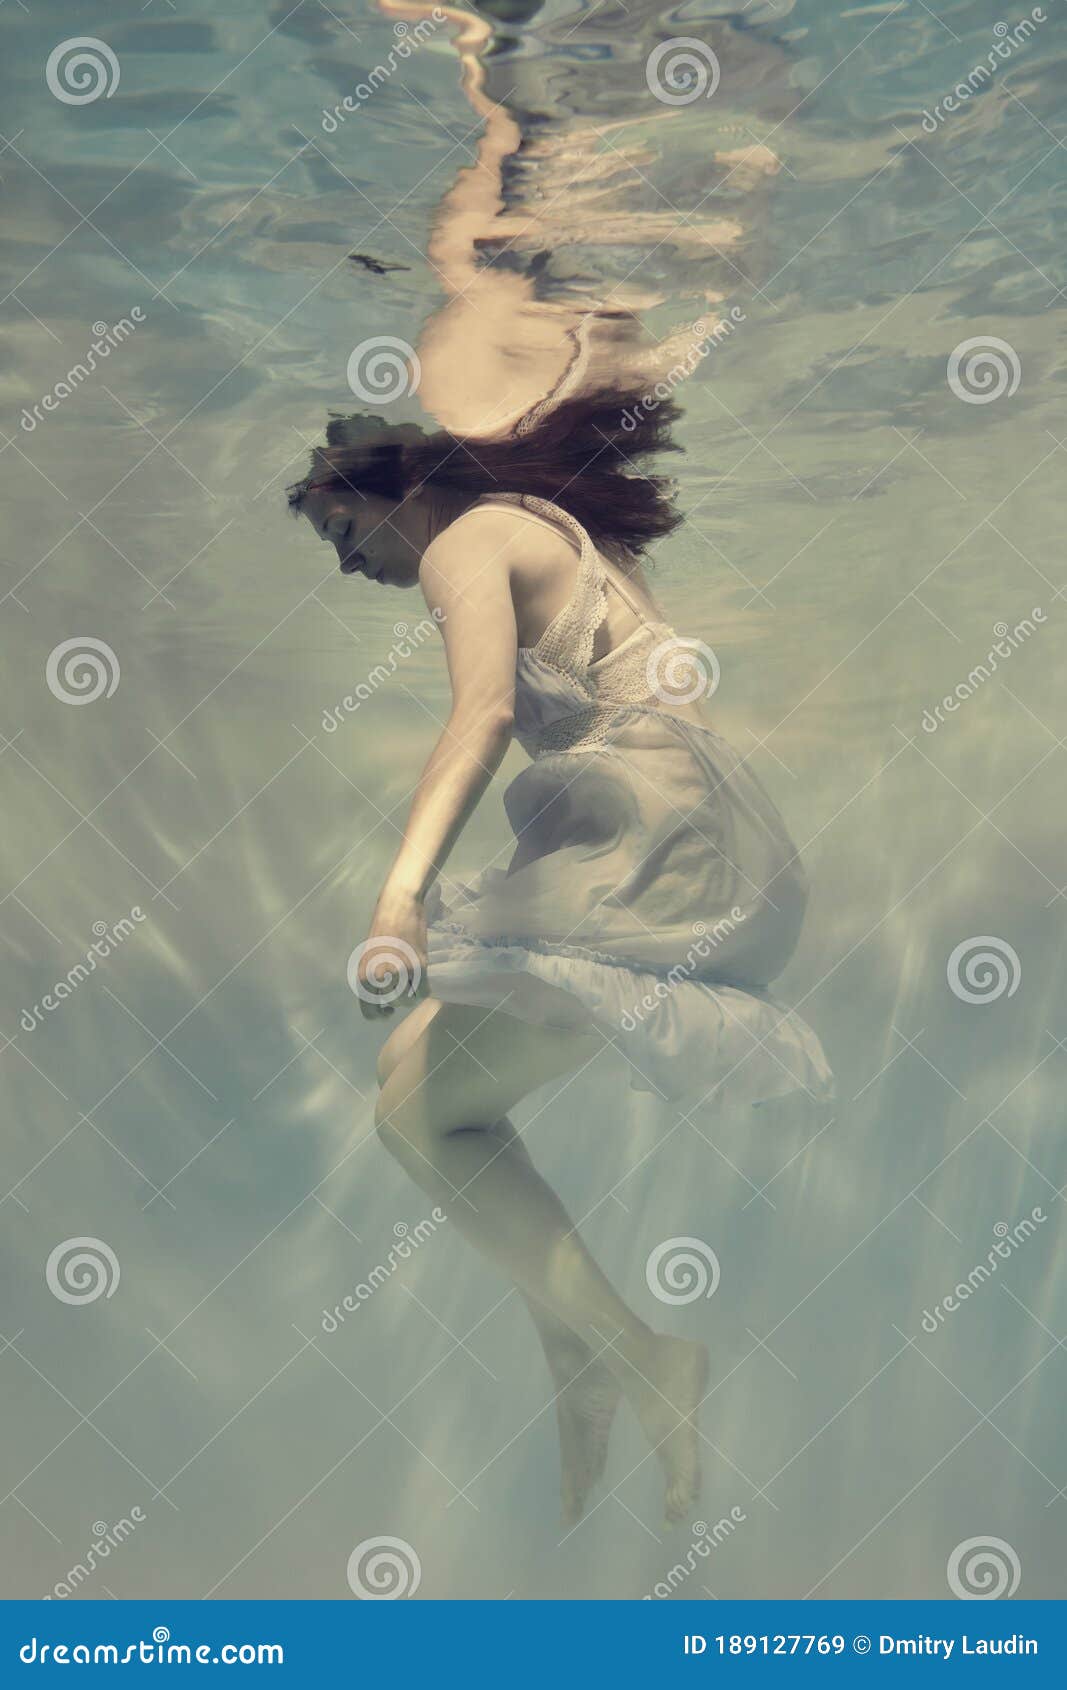 Portret van een meisje in een blauwe jurk die onder water drijft. Foto's van een jong meisje die onder water zwemt in een lichtblauwe jurk die het effect van gewichtloosheid en lichtheid creëert.